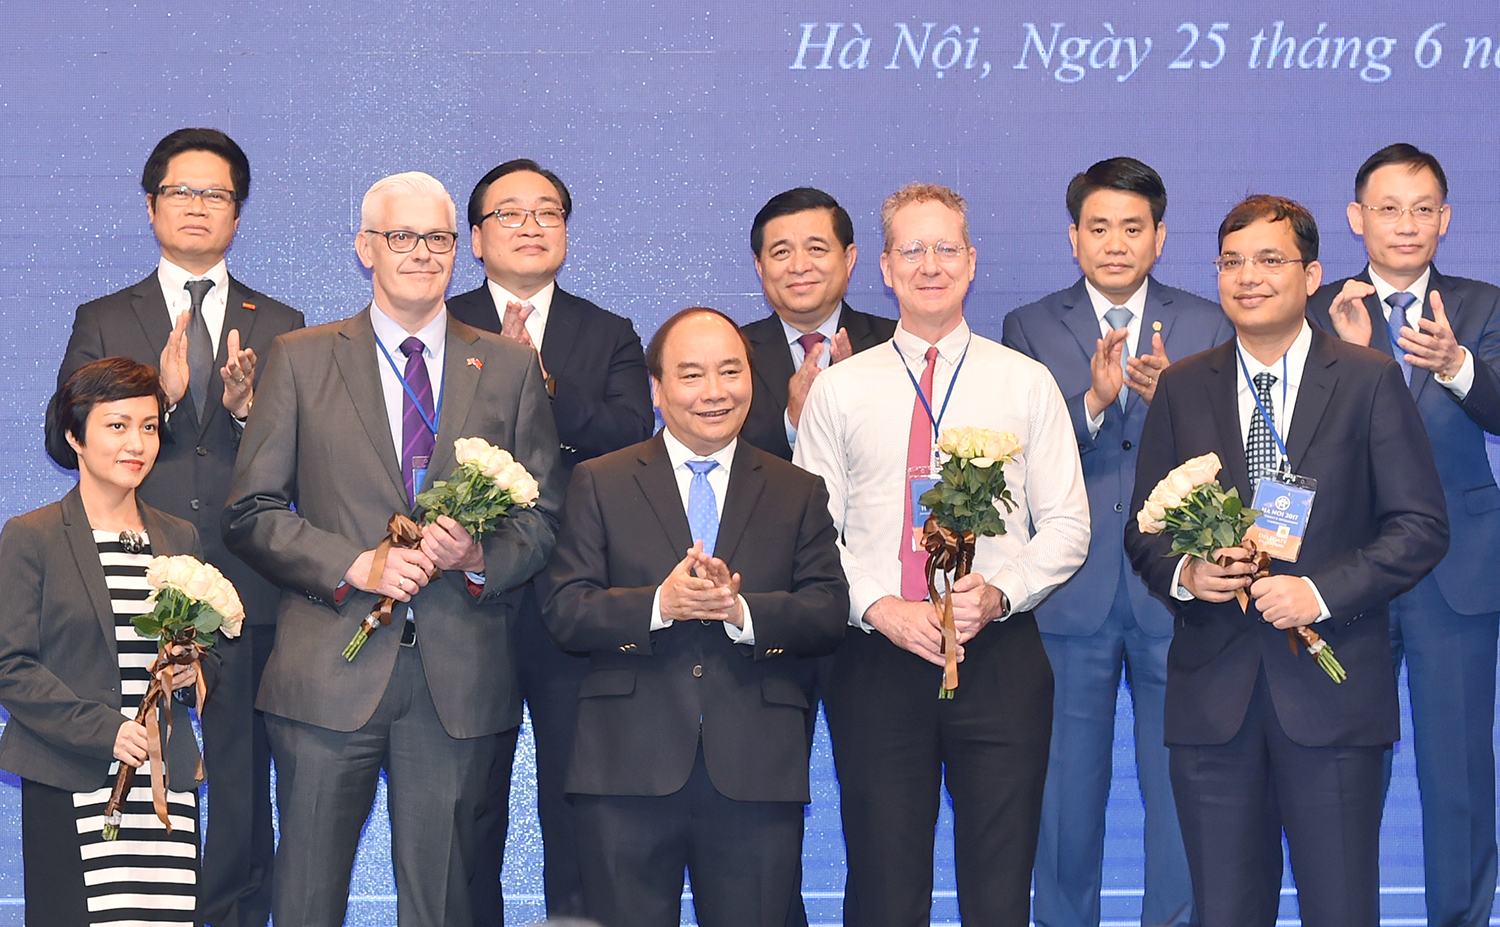 Thủ tướng Chính phủ Nguyễn Xuân Phúc tặng hoa cho các nhà đầu tư (Ảnh: VGP)